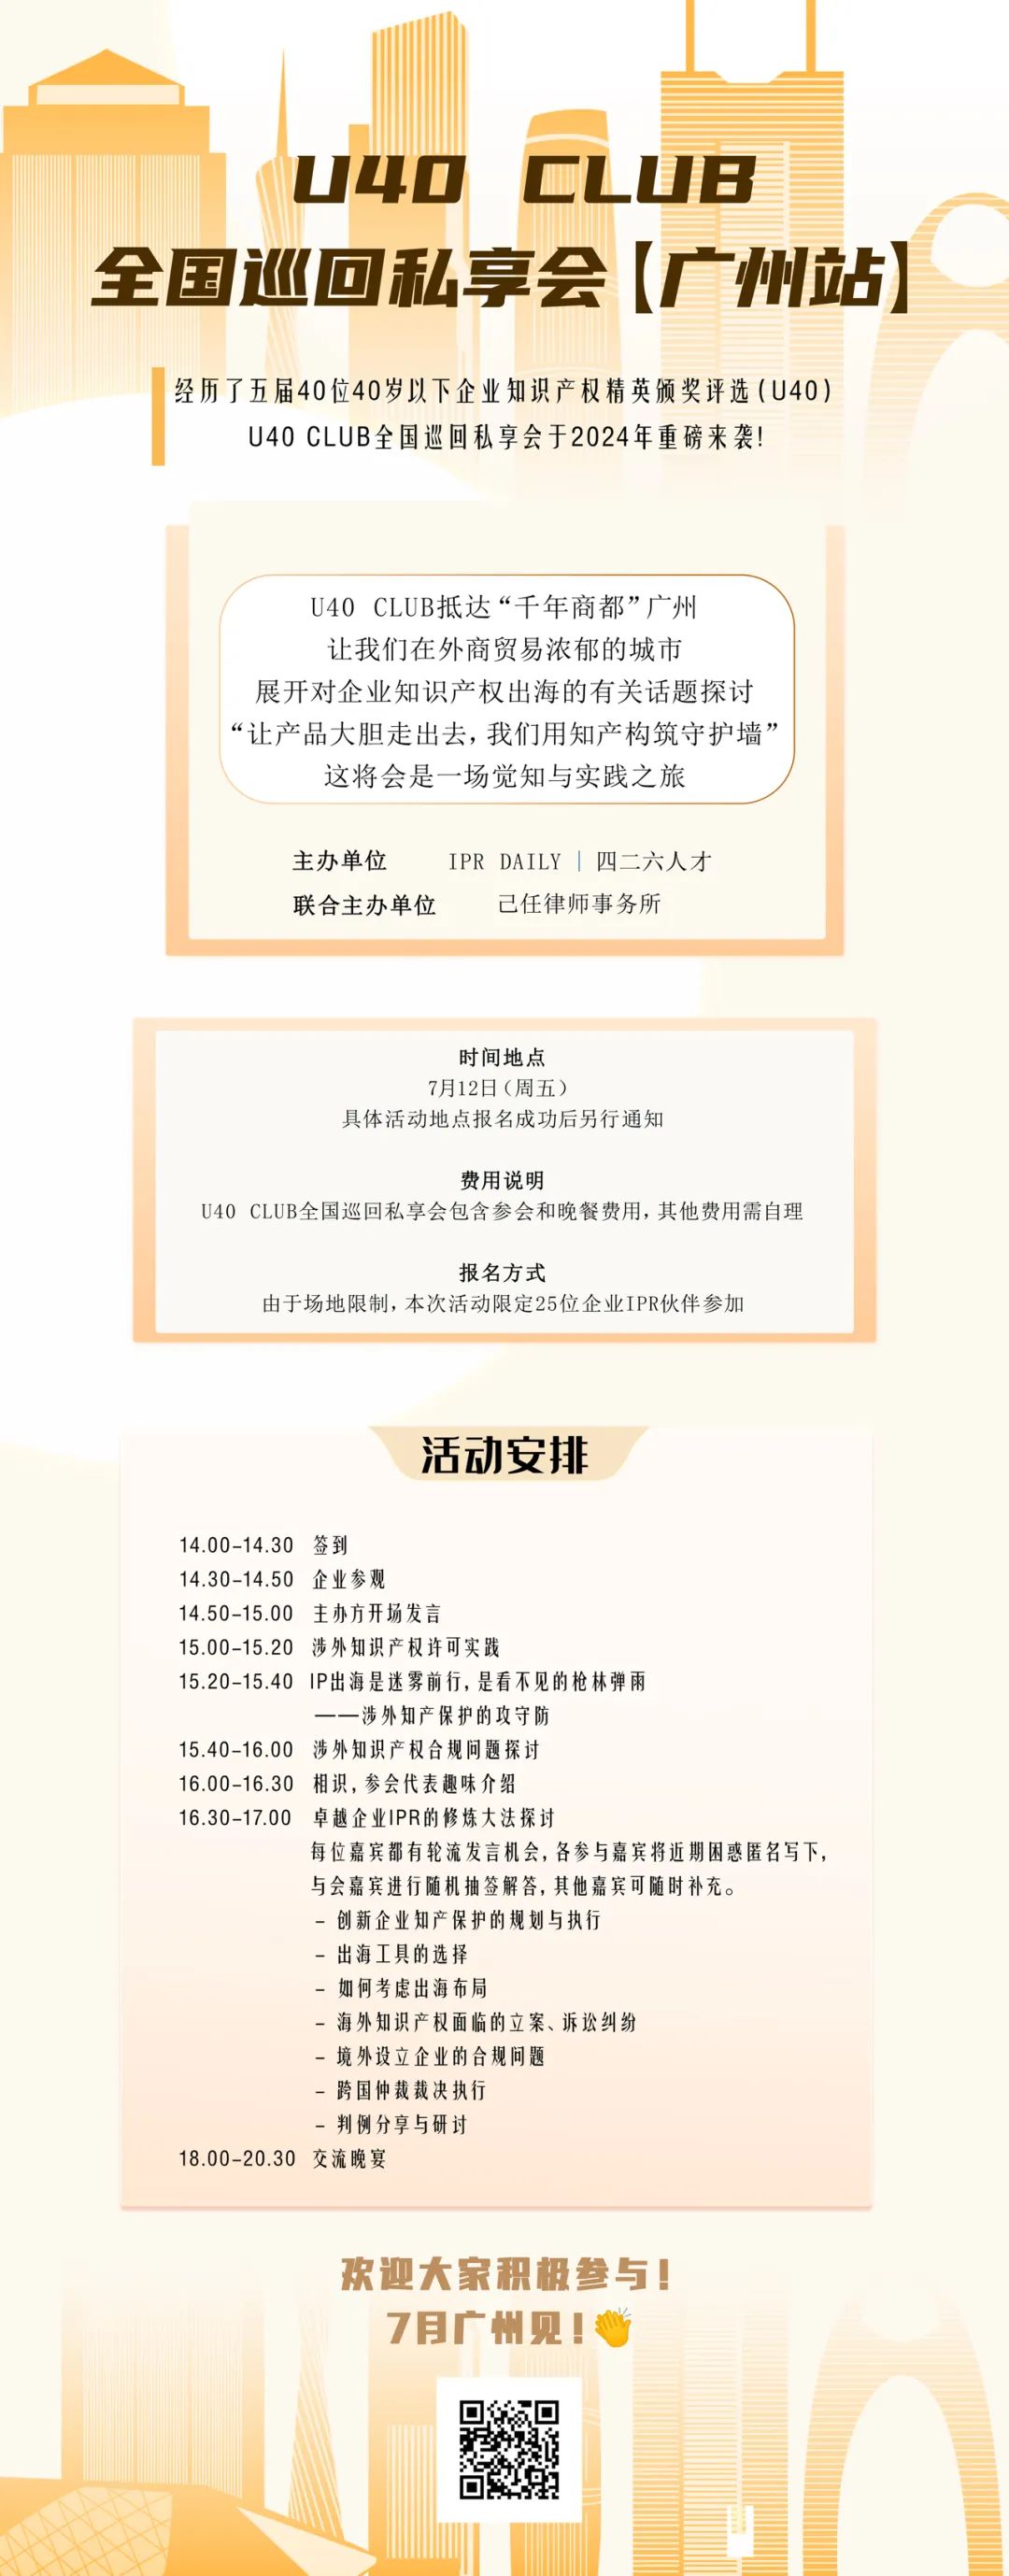 延期！U40Club全国巡回私享会【广州站】将延期至7月12日举办